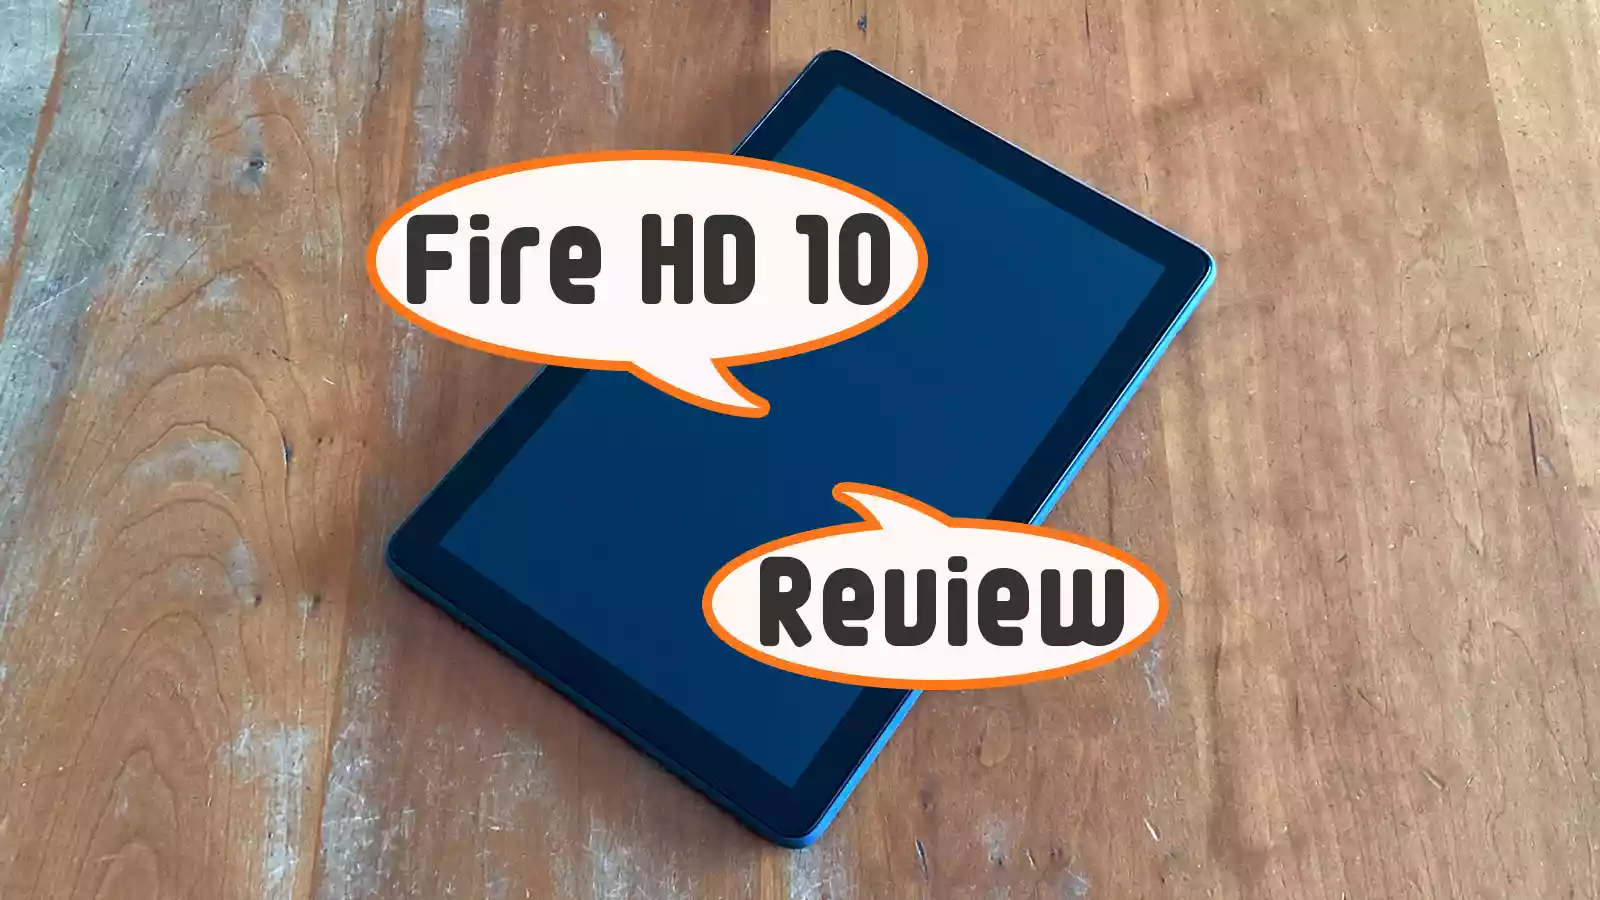 第11世代 2021年モデル】Fire HD 10 タブレット新旧モデル比較 | すいかの名産地